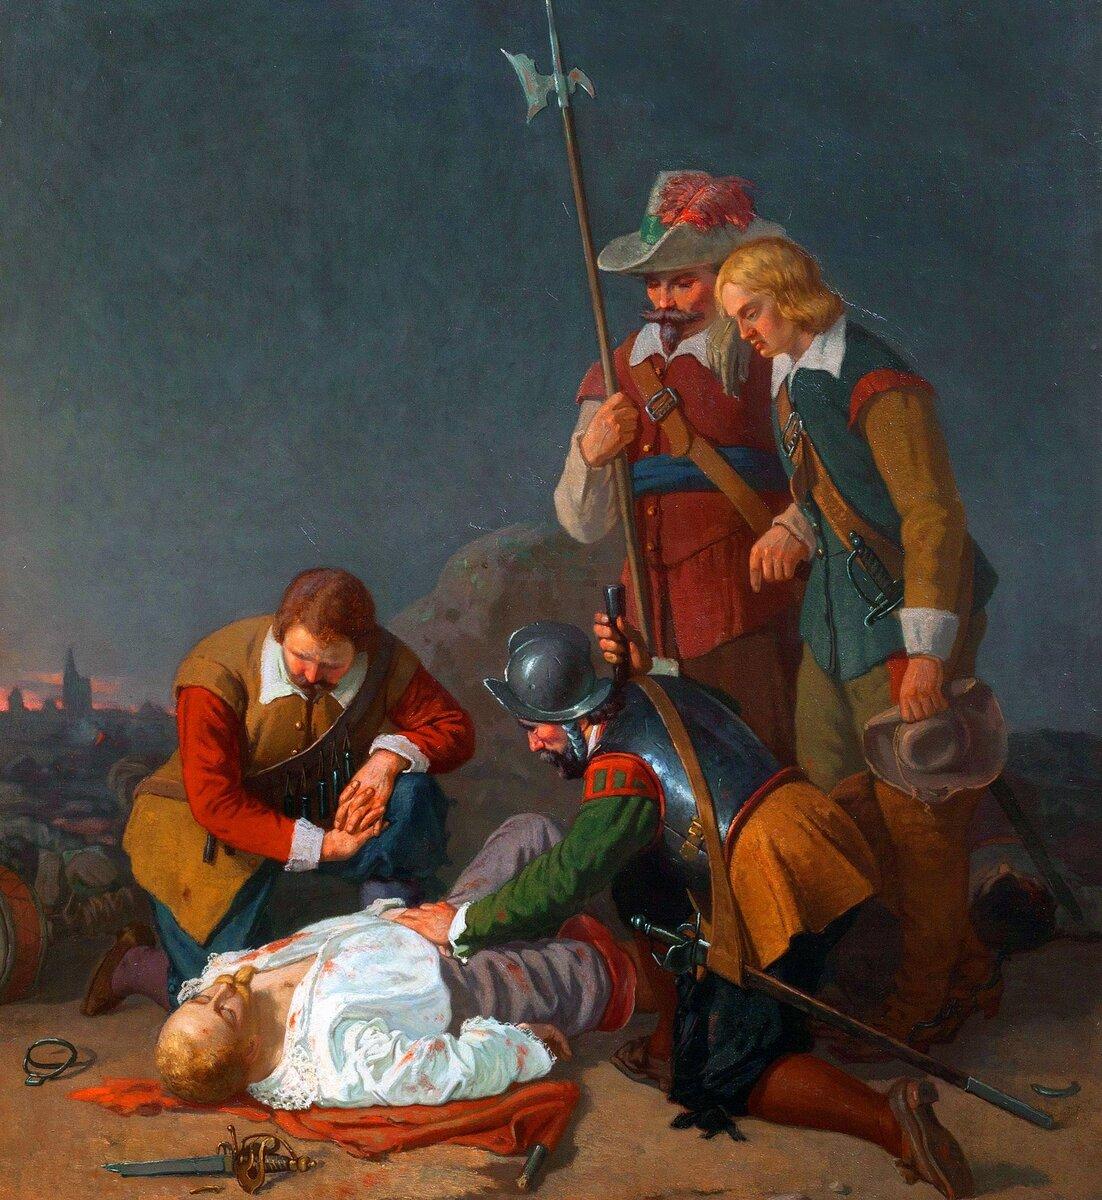 В 1632 году в сражении при Лютцене убили Густава Адольфа. Художник: Axel Kulle